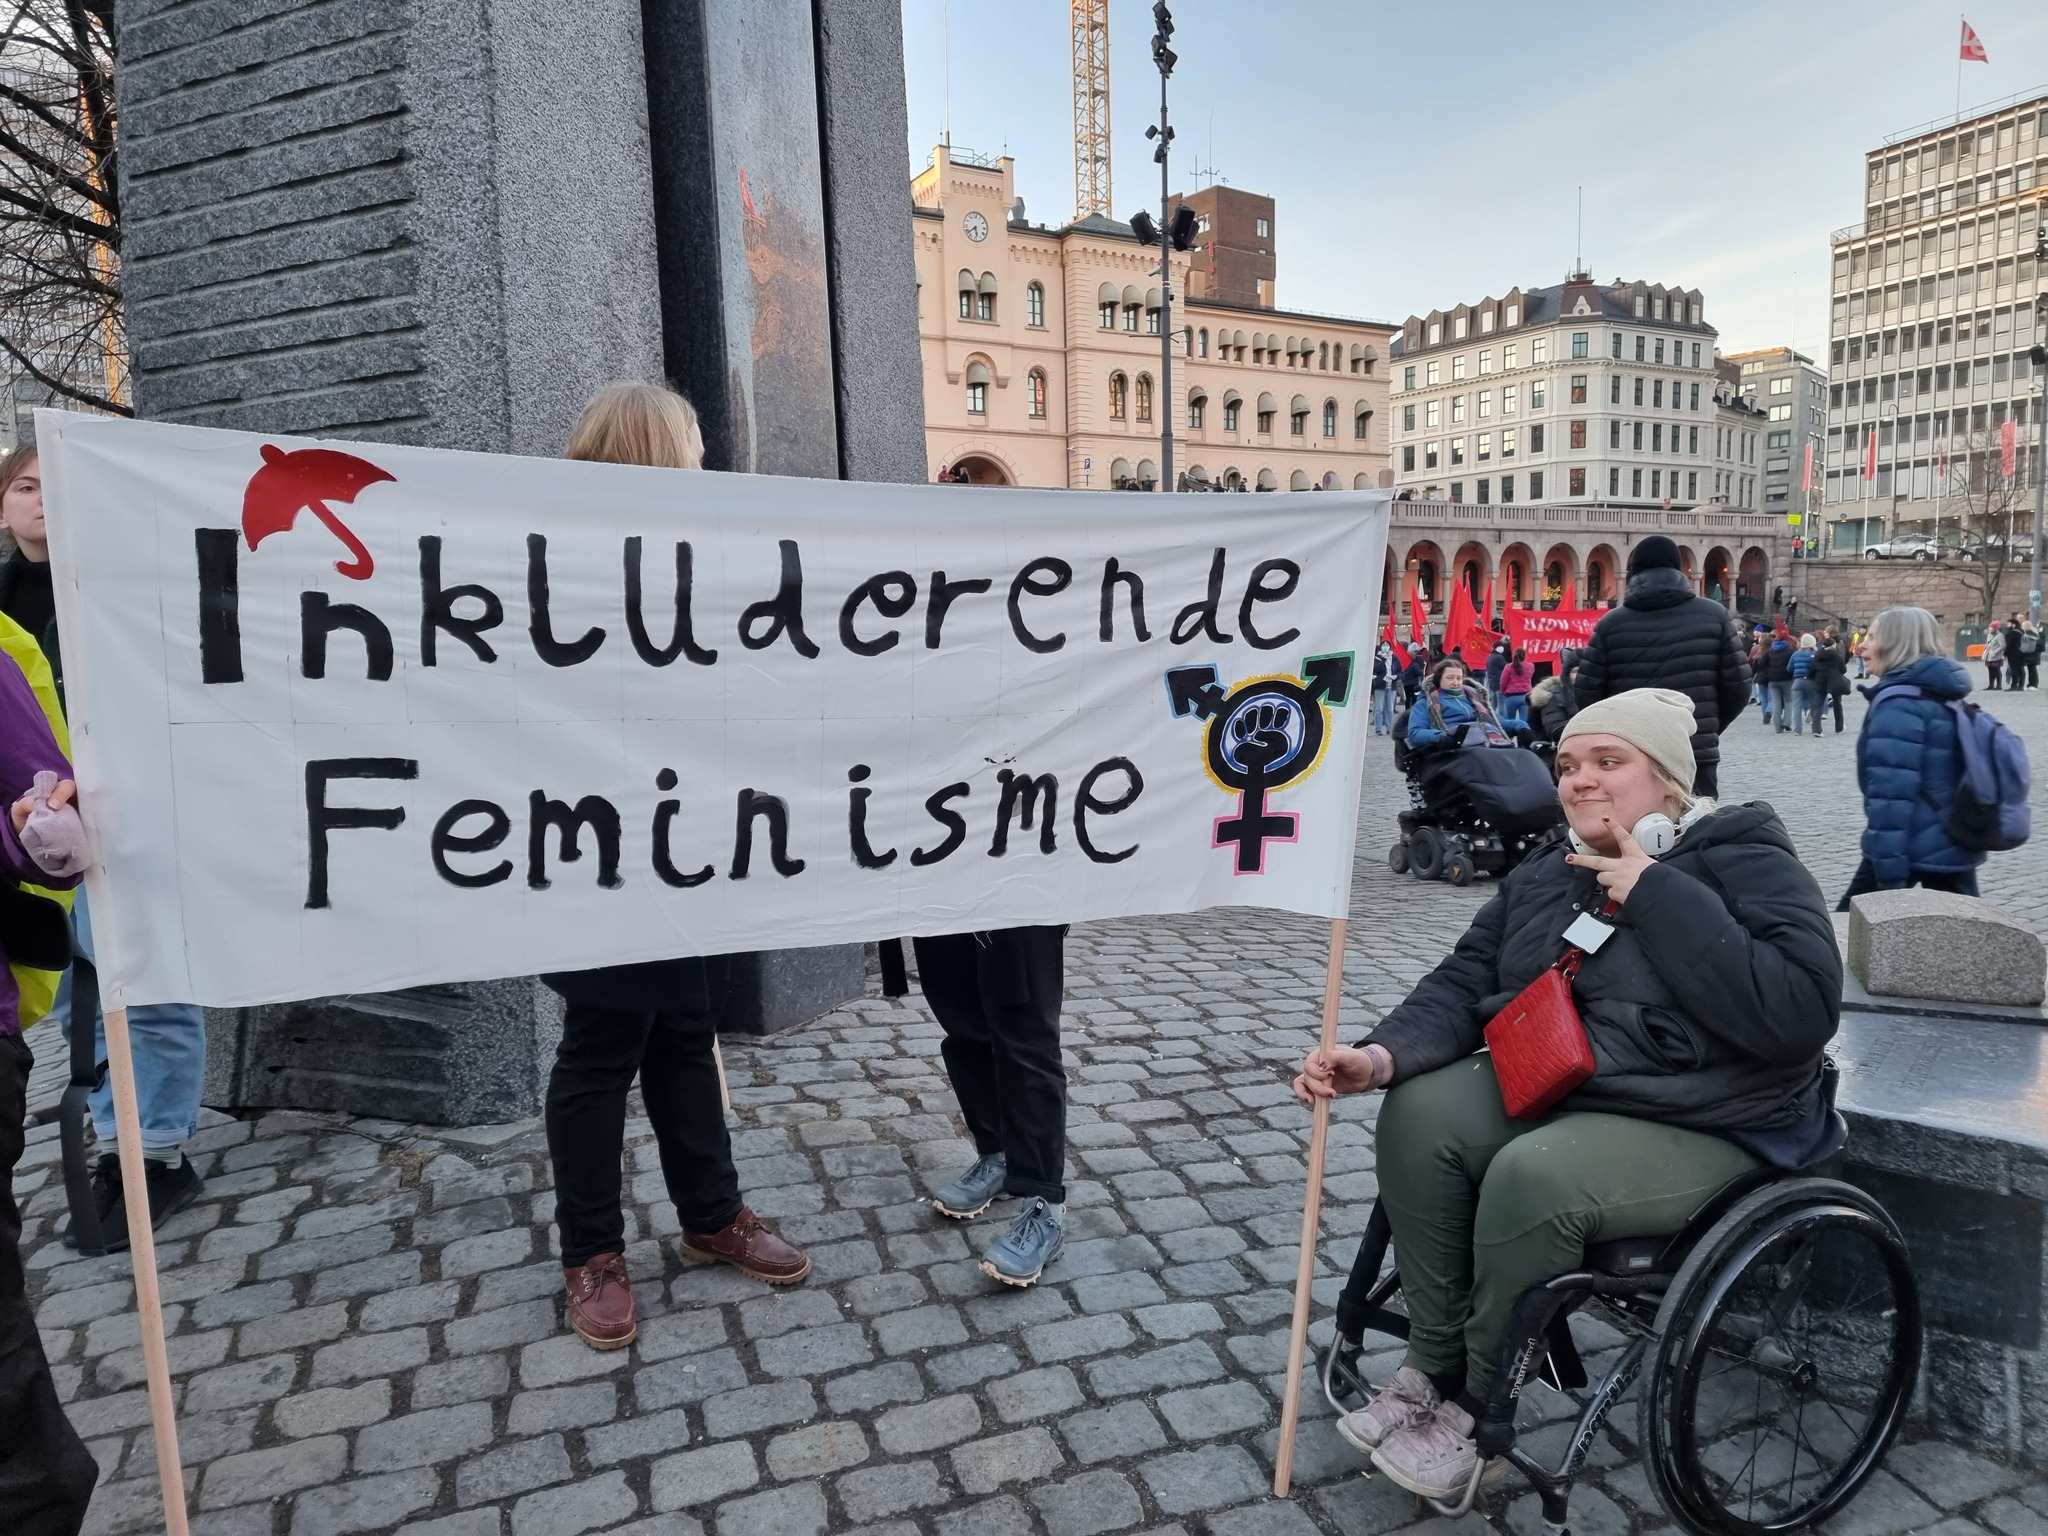 Inkluderende feminismevarrangerer alternativ arrangement på kvinnedagen (Foto: Inkluderende feminisme/presse.)